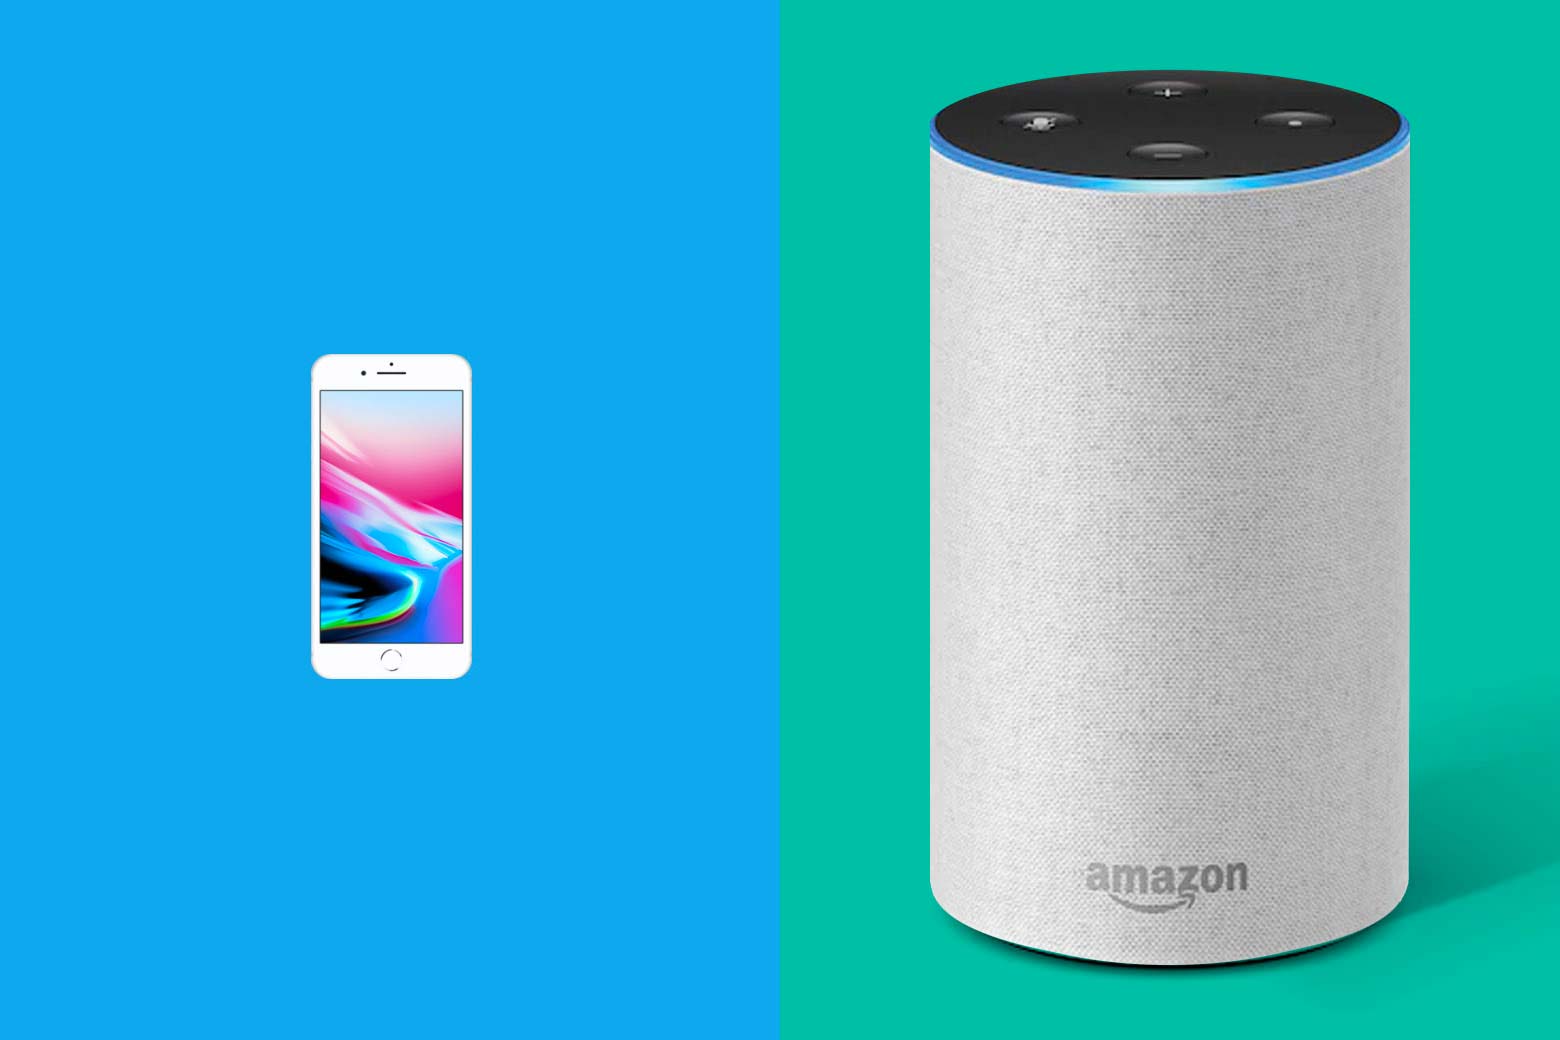 Left: iPhone Right: Amazon Echo